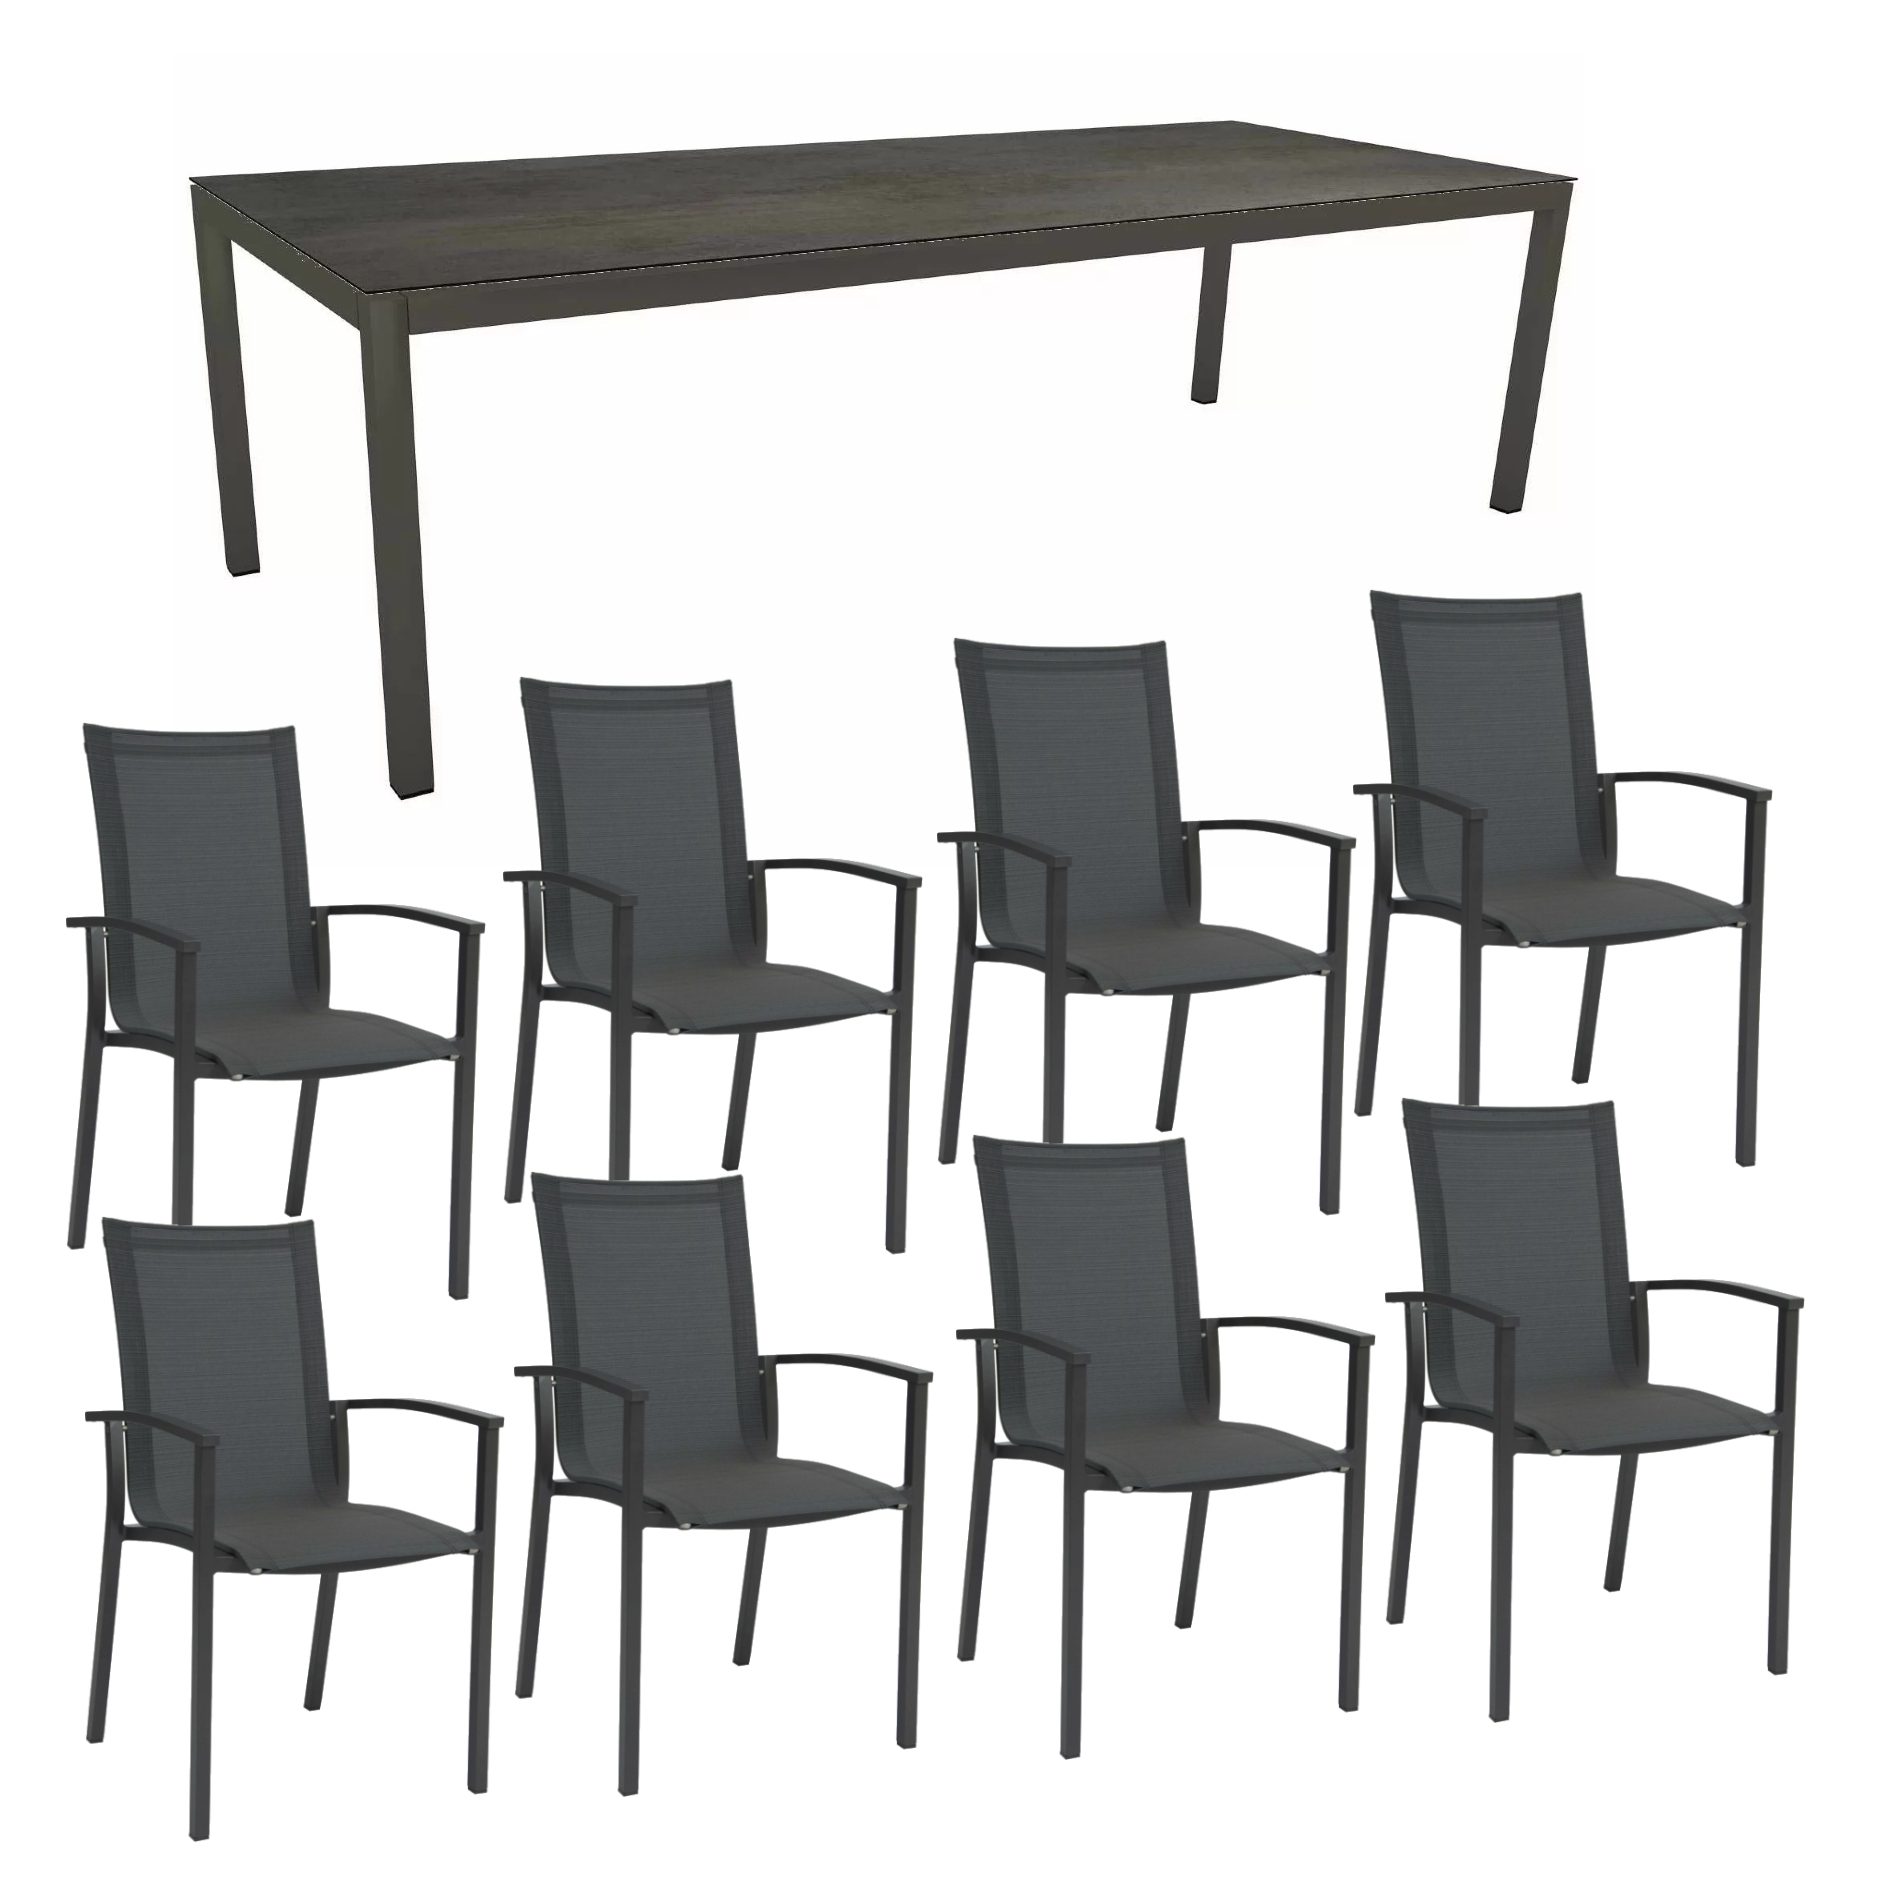 Stern Gartenmöbel-Set mit "Evoee" Stapelsessel & Gartentisch, Gestelle Aluminium anthrazit, Sitzfläche Textilgewebe karbon, Tischplatte HPL Nitro